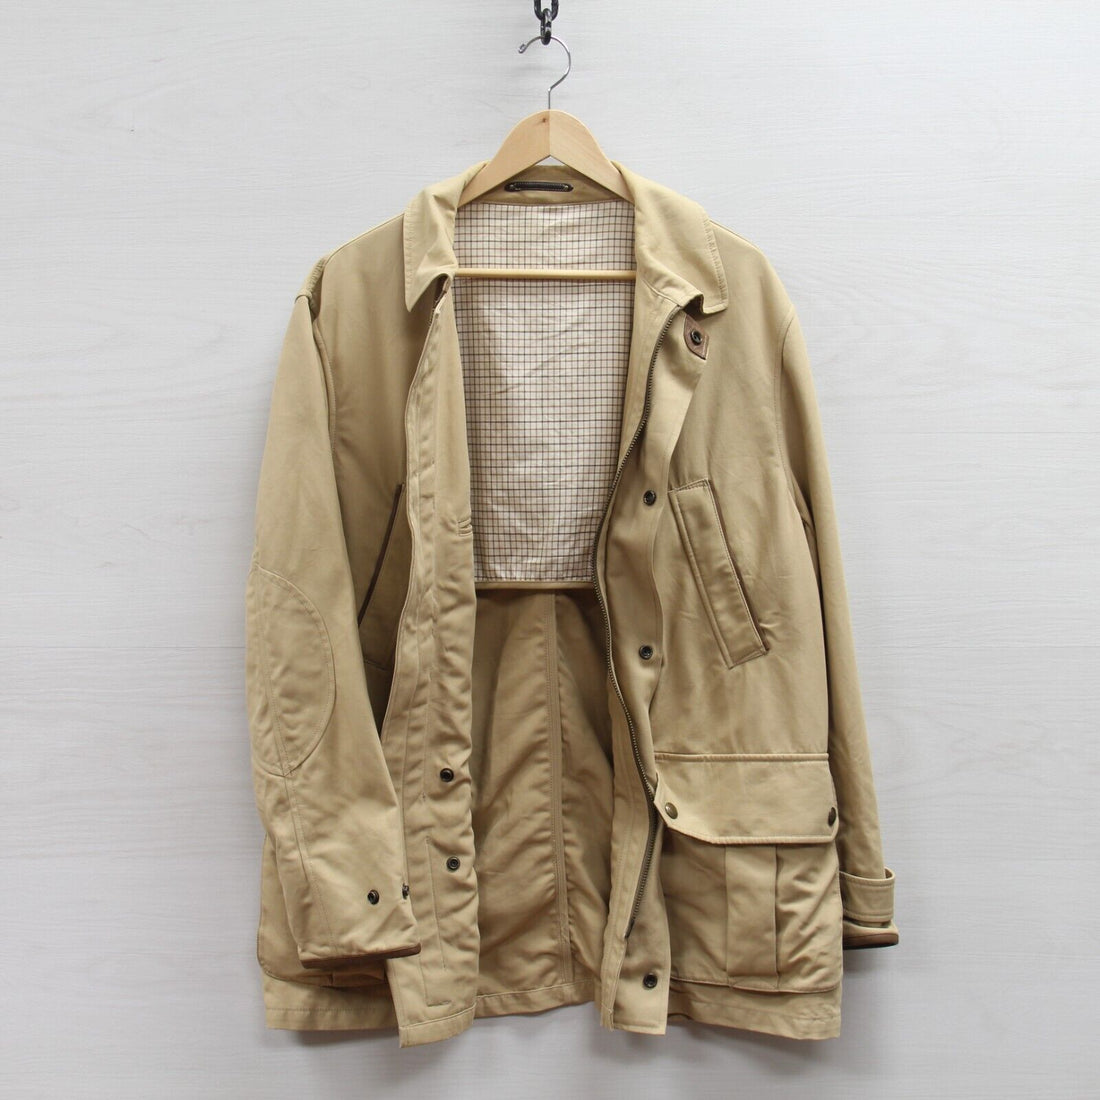 Vintage Polo Ralph Lauren Coat Jacket Size Large Beige Tan Cotton Utility Cargo